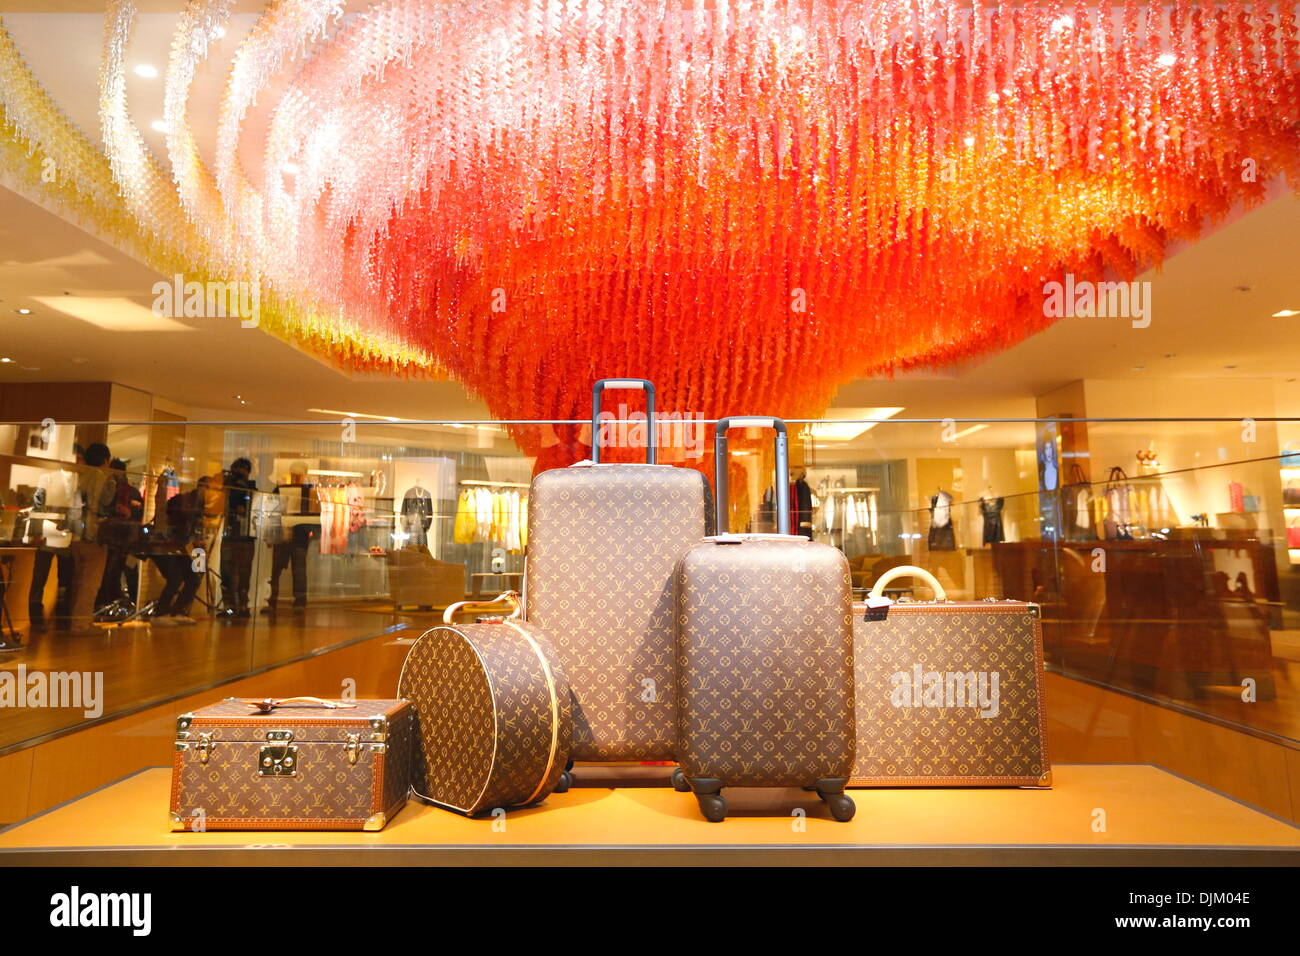 Tokio, Japón. 28 Nov, 2013. Almacén de Louis Vuitton, Nov 28, 2013 : abrir la ceremonia para 'Louis Vuitton ' tienda en Shinjuku, Tokio, Japón. Crédito: Aflo Co., Ltd./Alamy Live News Foto de stock